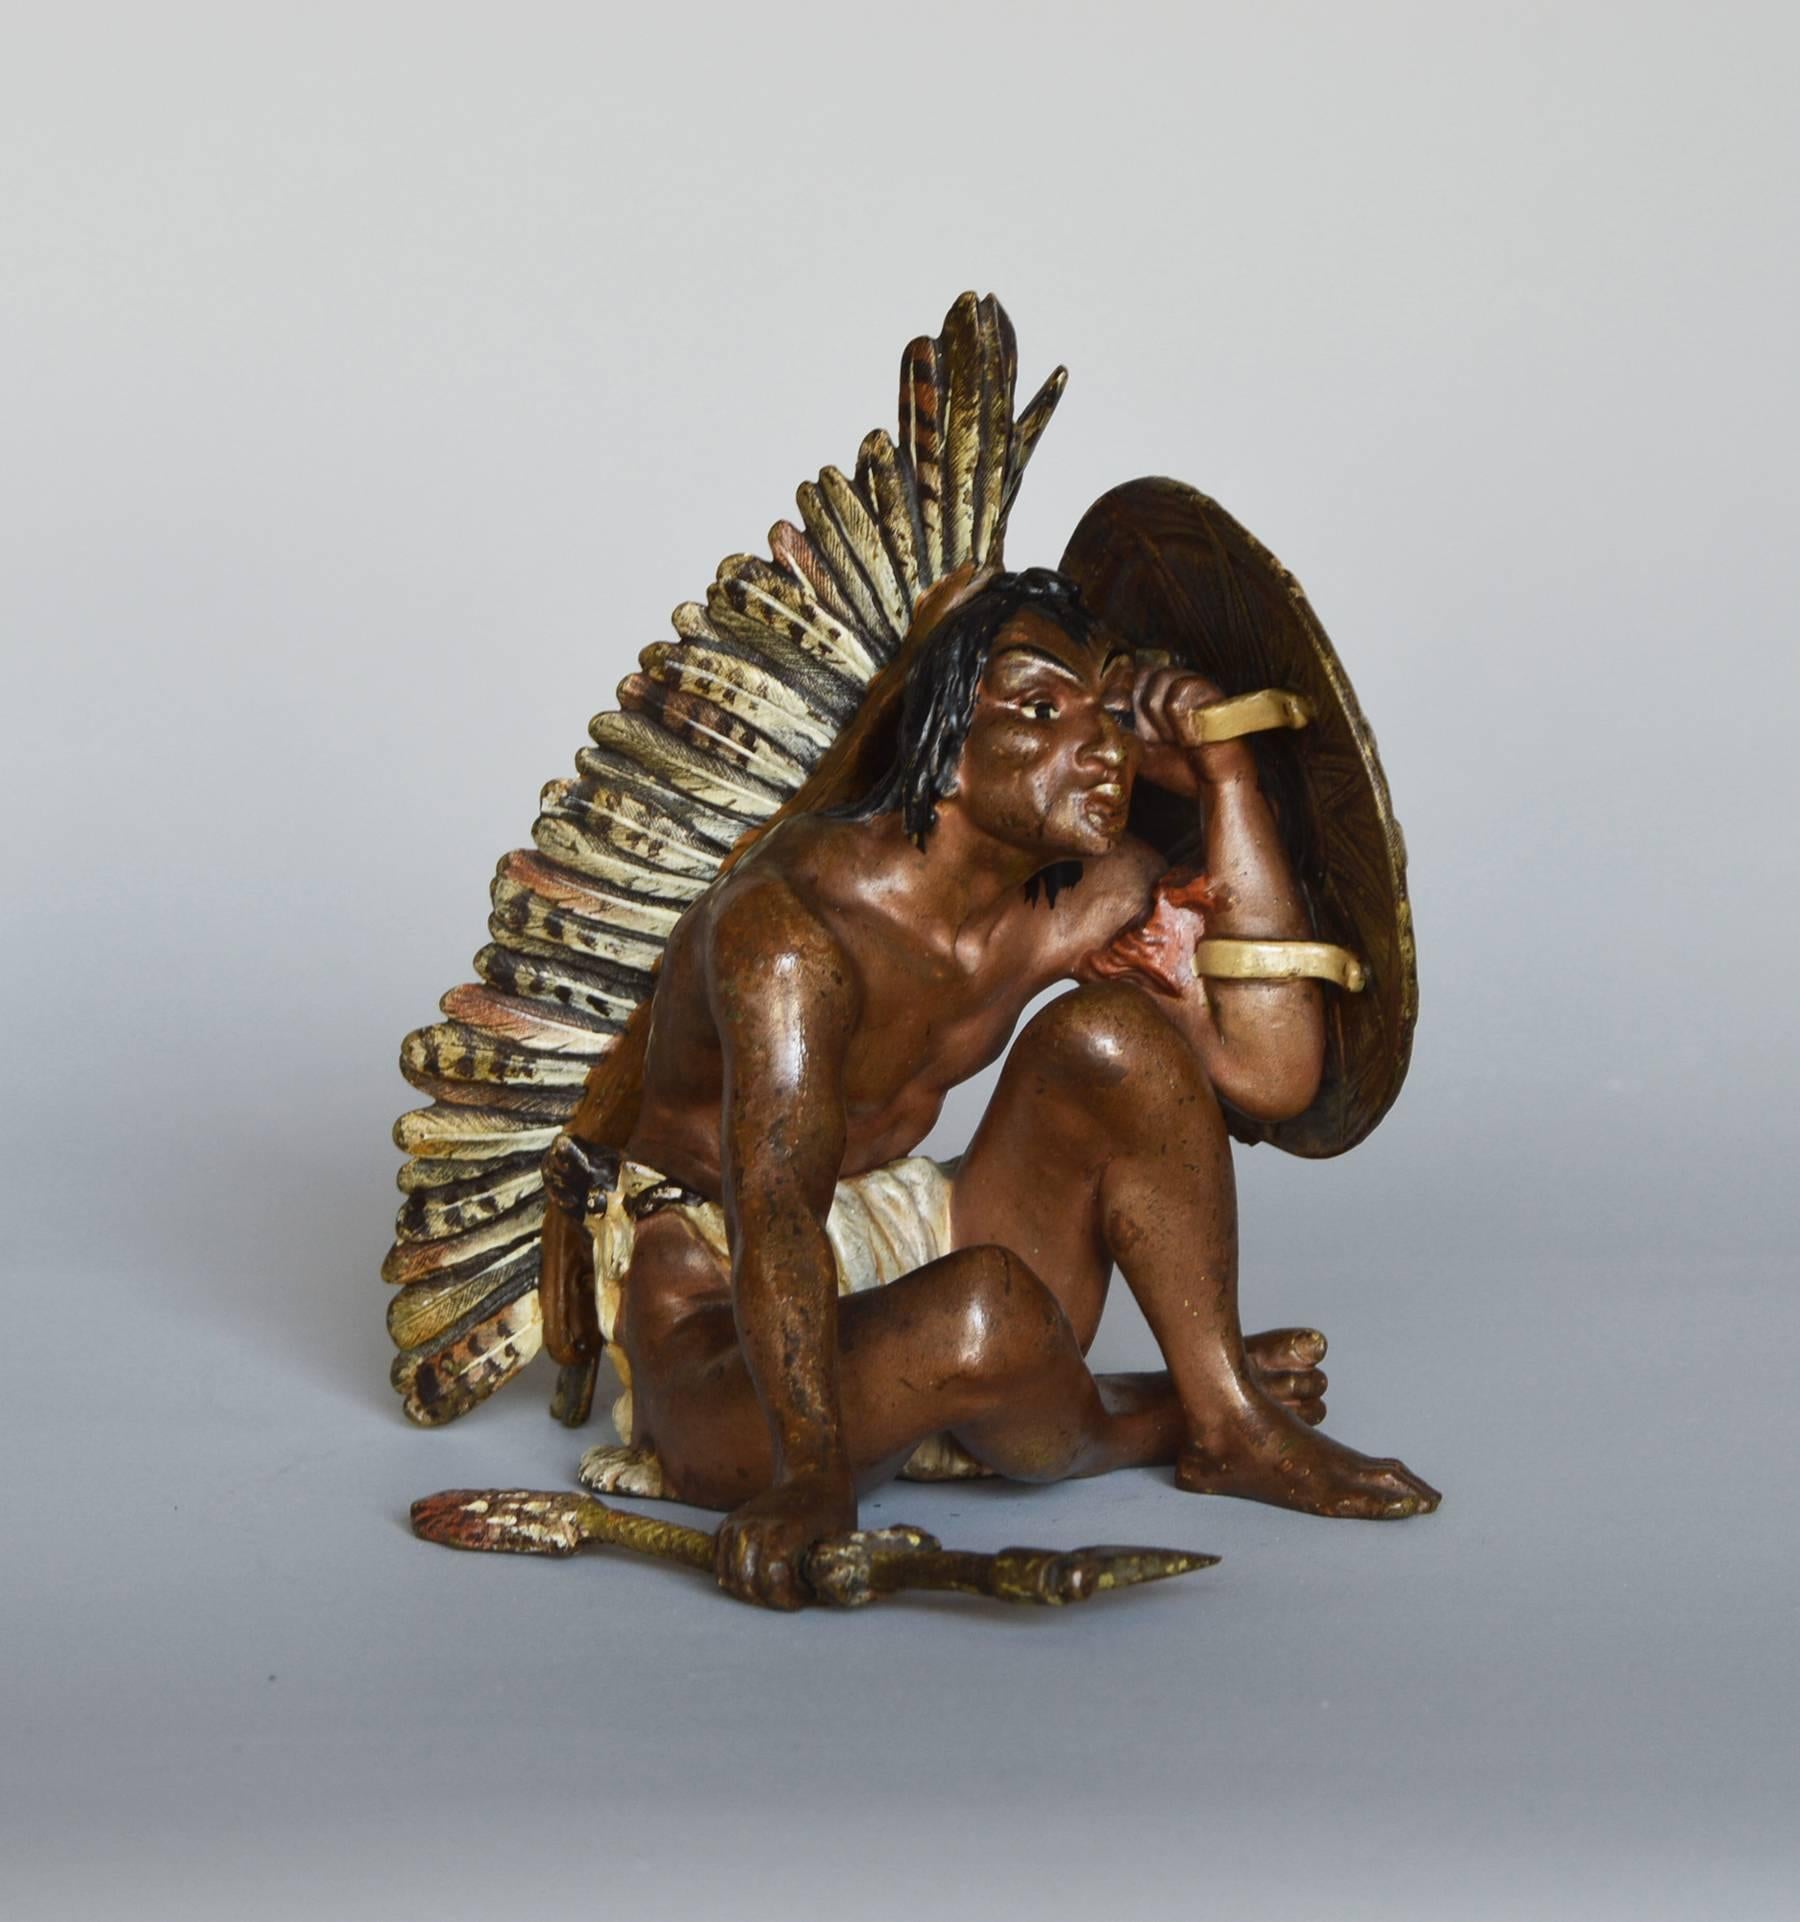 Franz Bergmann Figurative Sculpture - Native American Indian Sitting, bronze sculpture